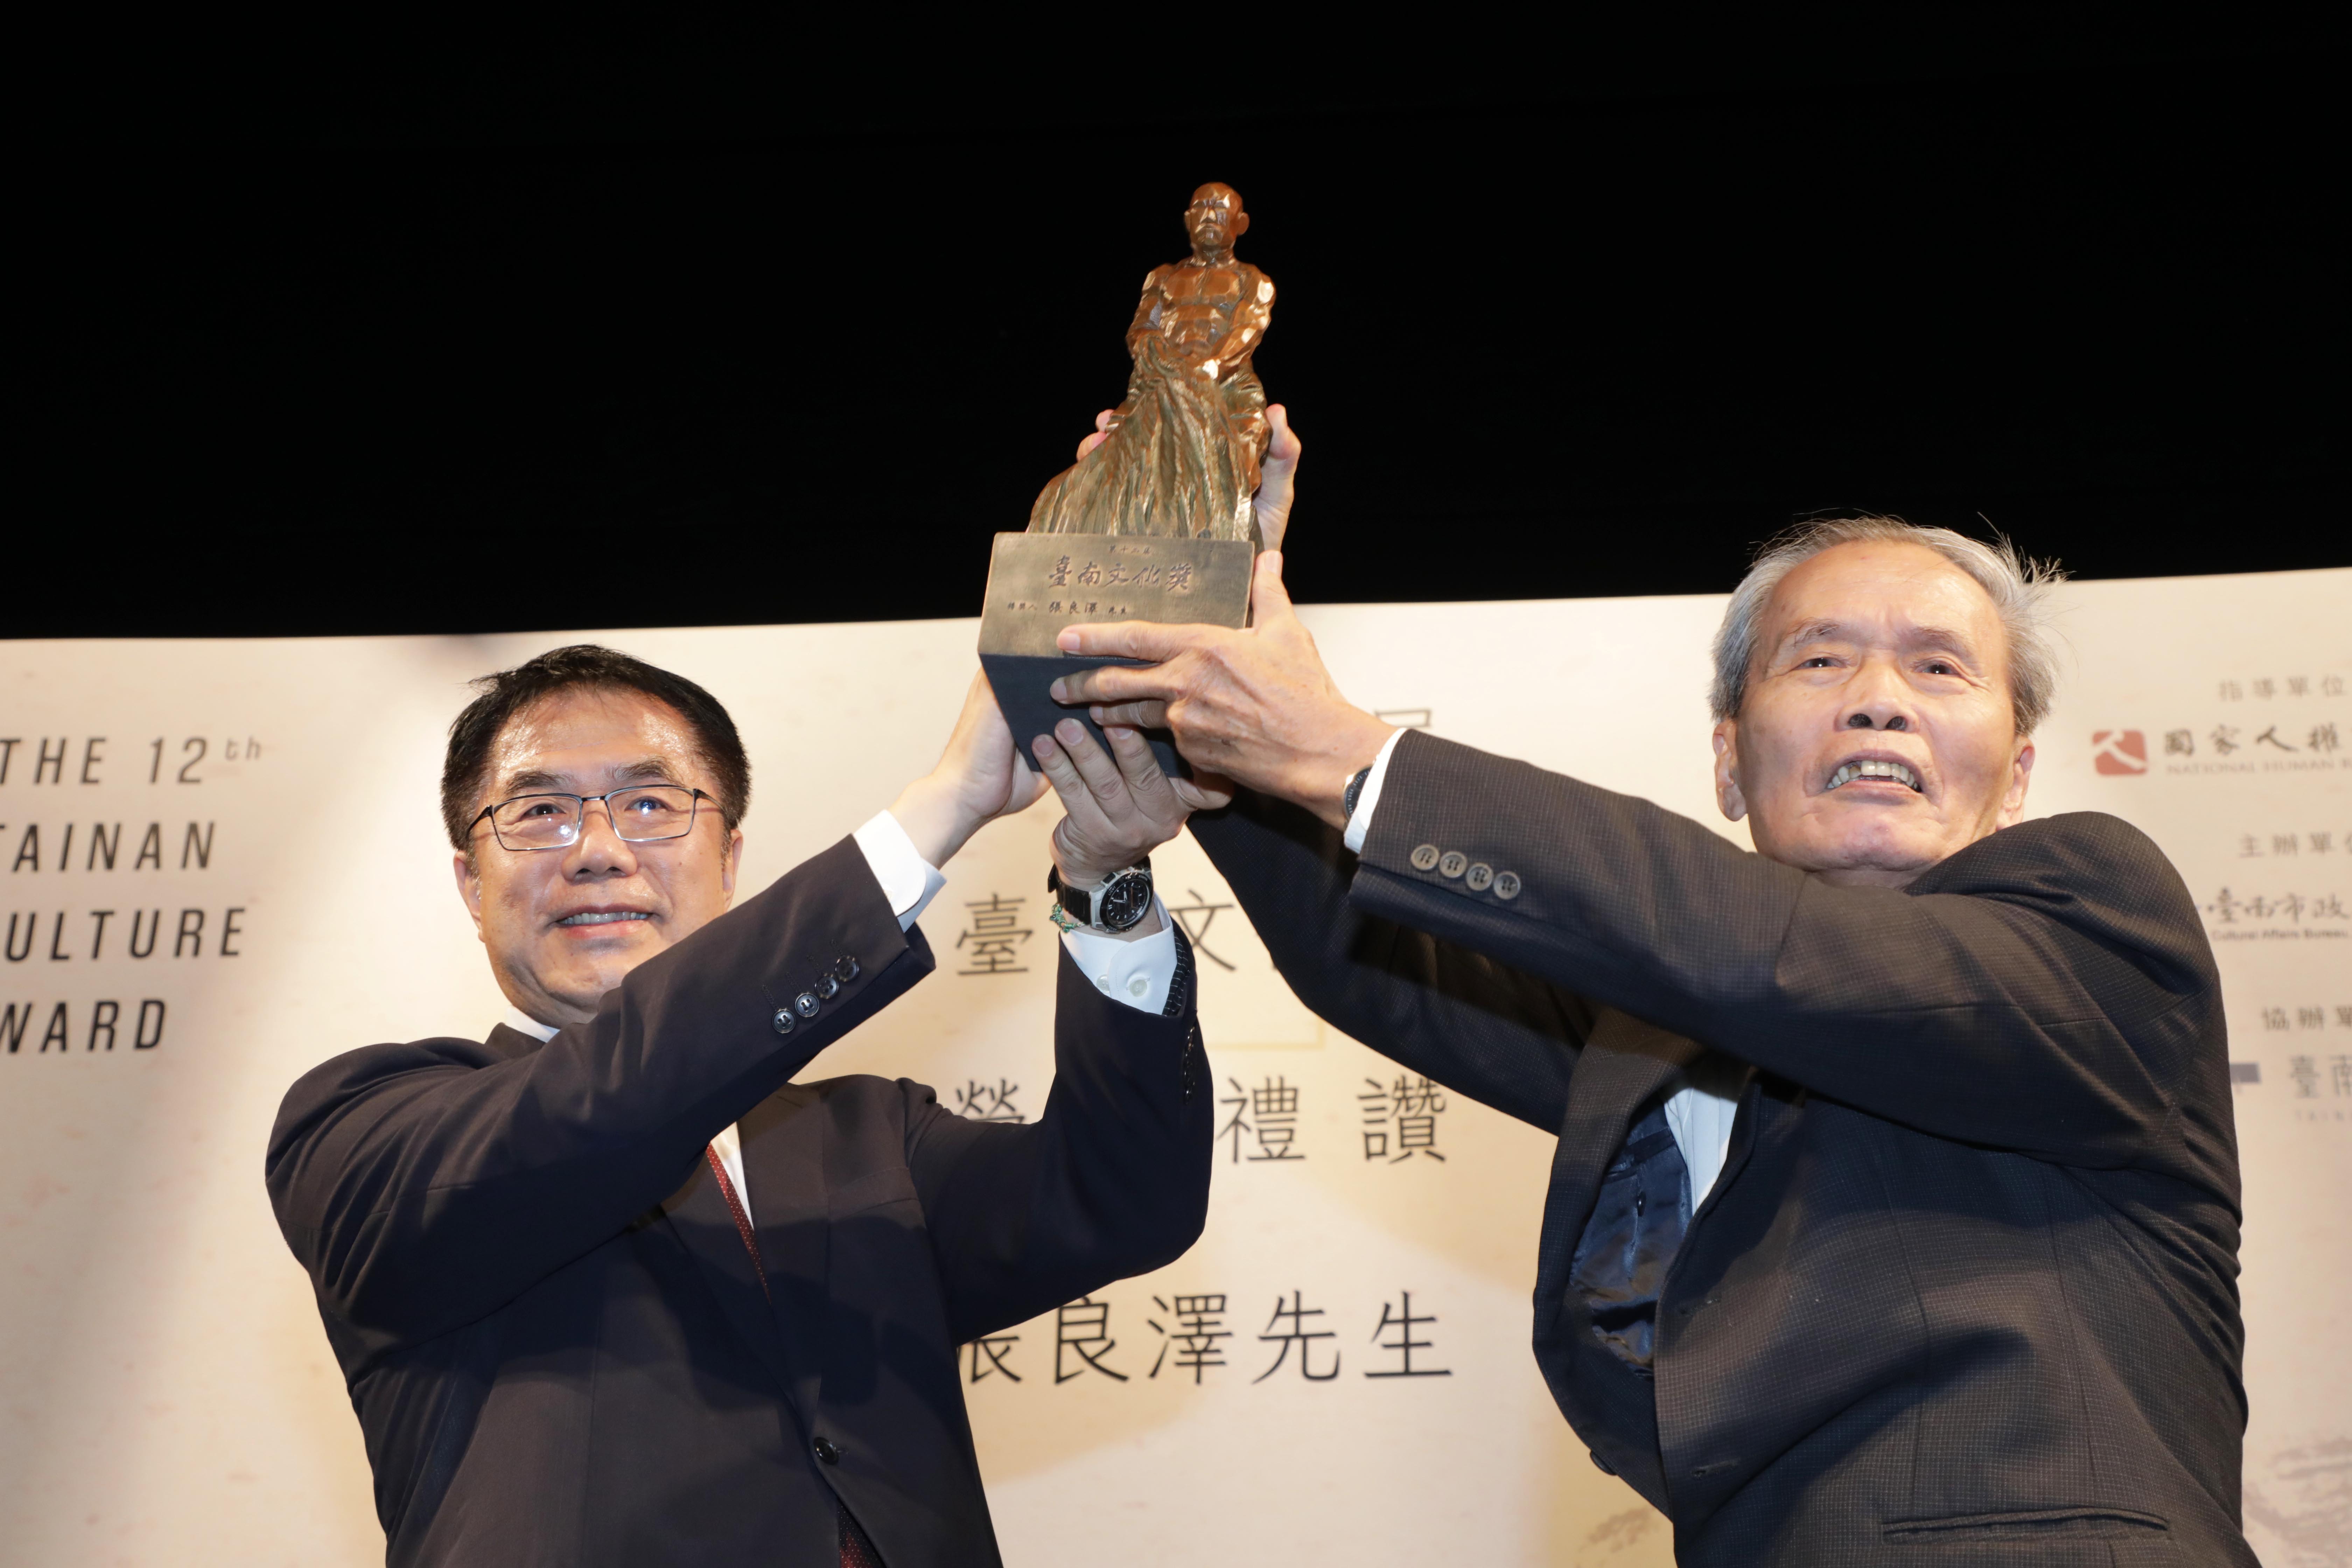 第 12 屆臺南文化獎由市長黃偉哲（左）親自頒授並祝賀張良澤教授